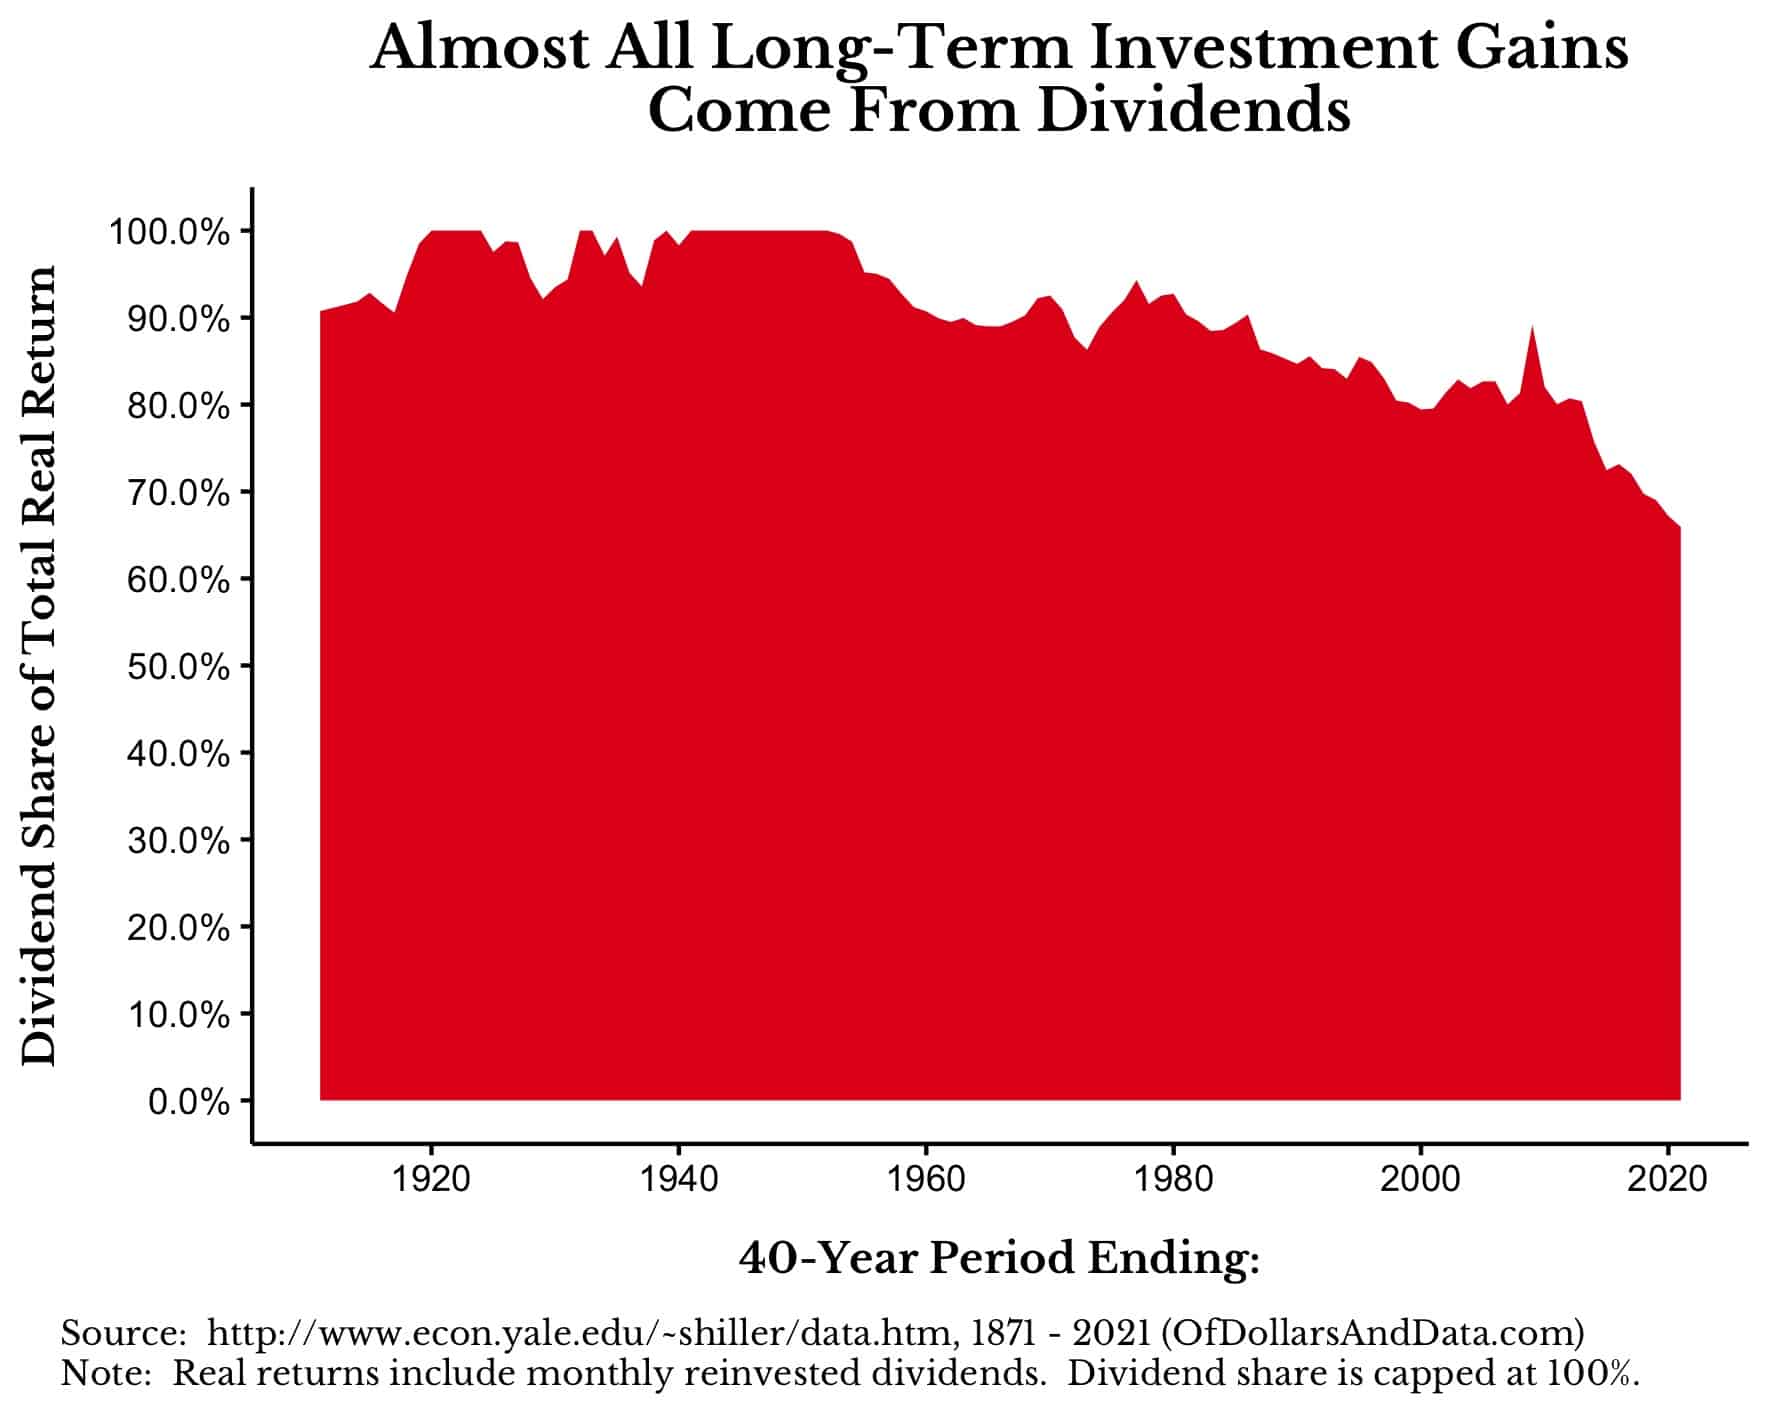 Americké akcie - podíl výnosů z reinvestic dividend na celkovém výnosu (40letý horizont)